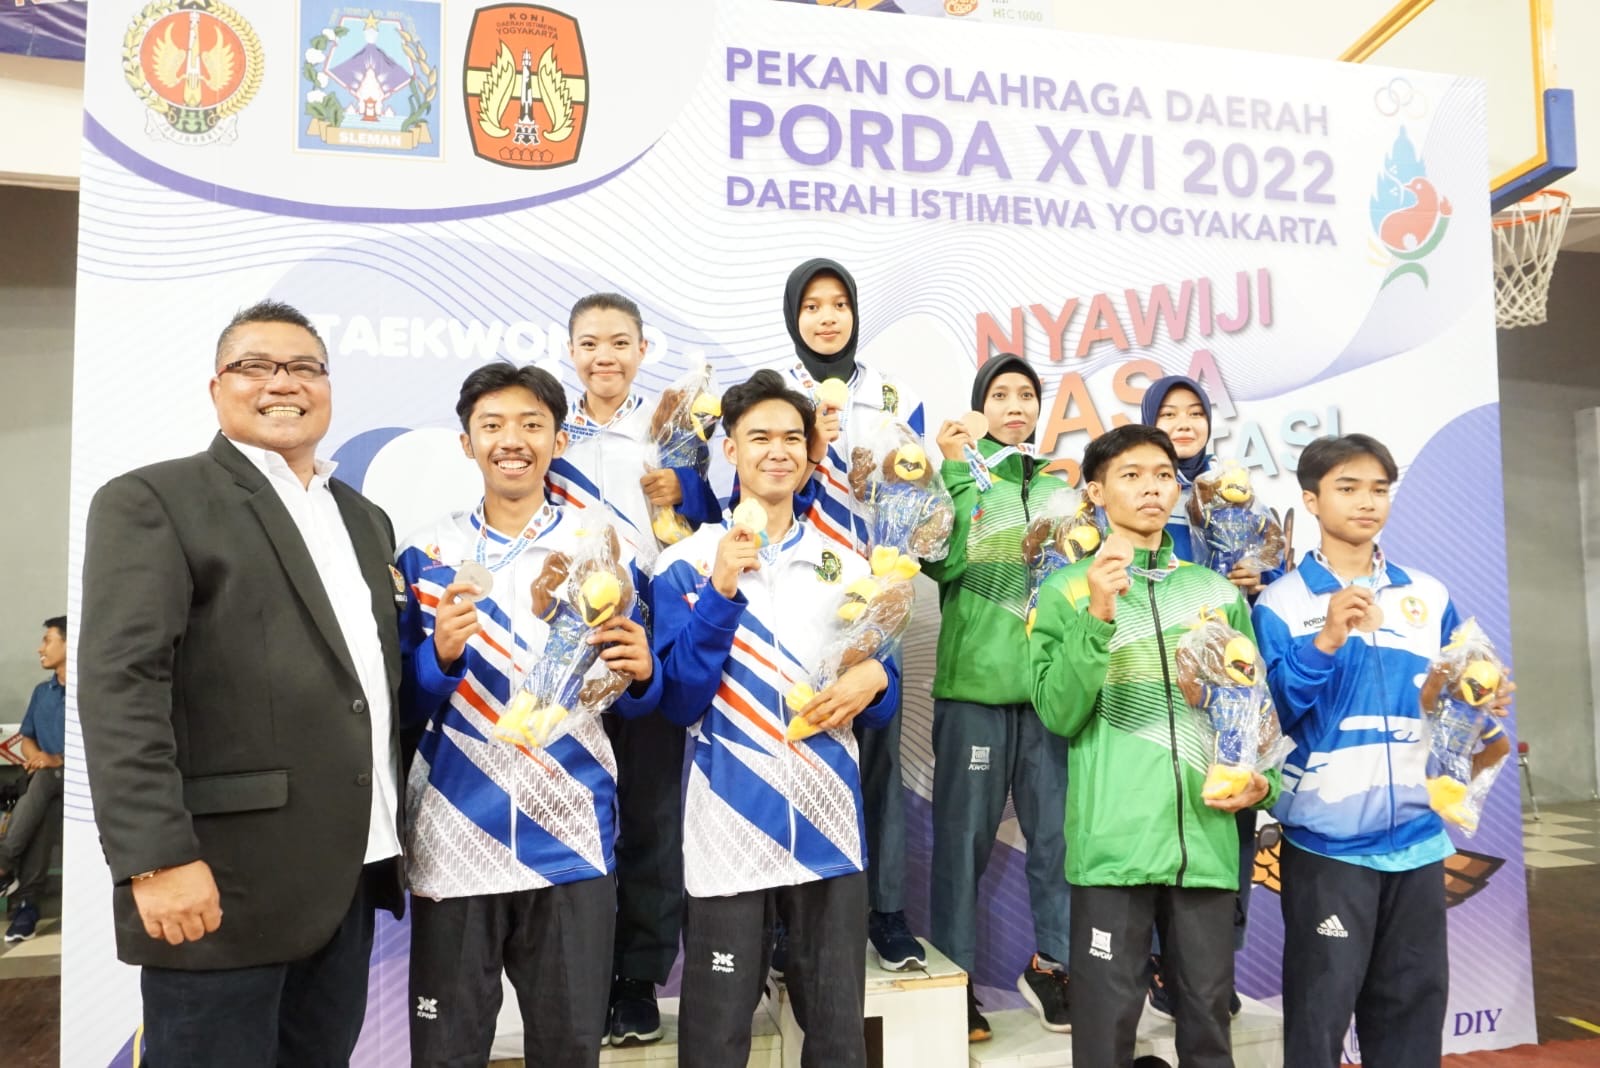 Foto Pekan Olahraga Daerah PORDA XVI 2022 Daerah Istimewa Yogyakarta